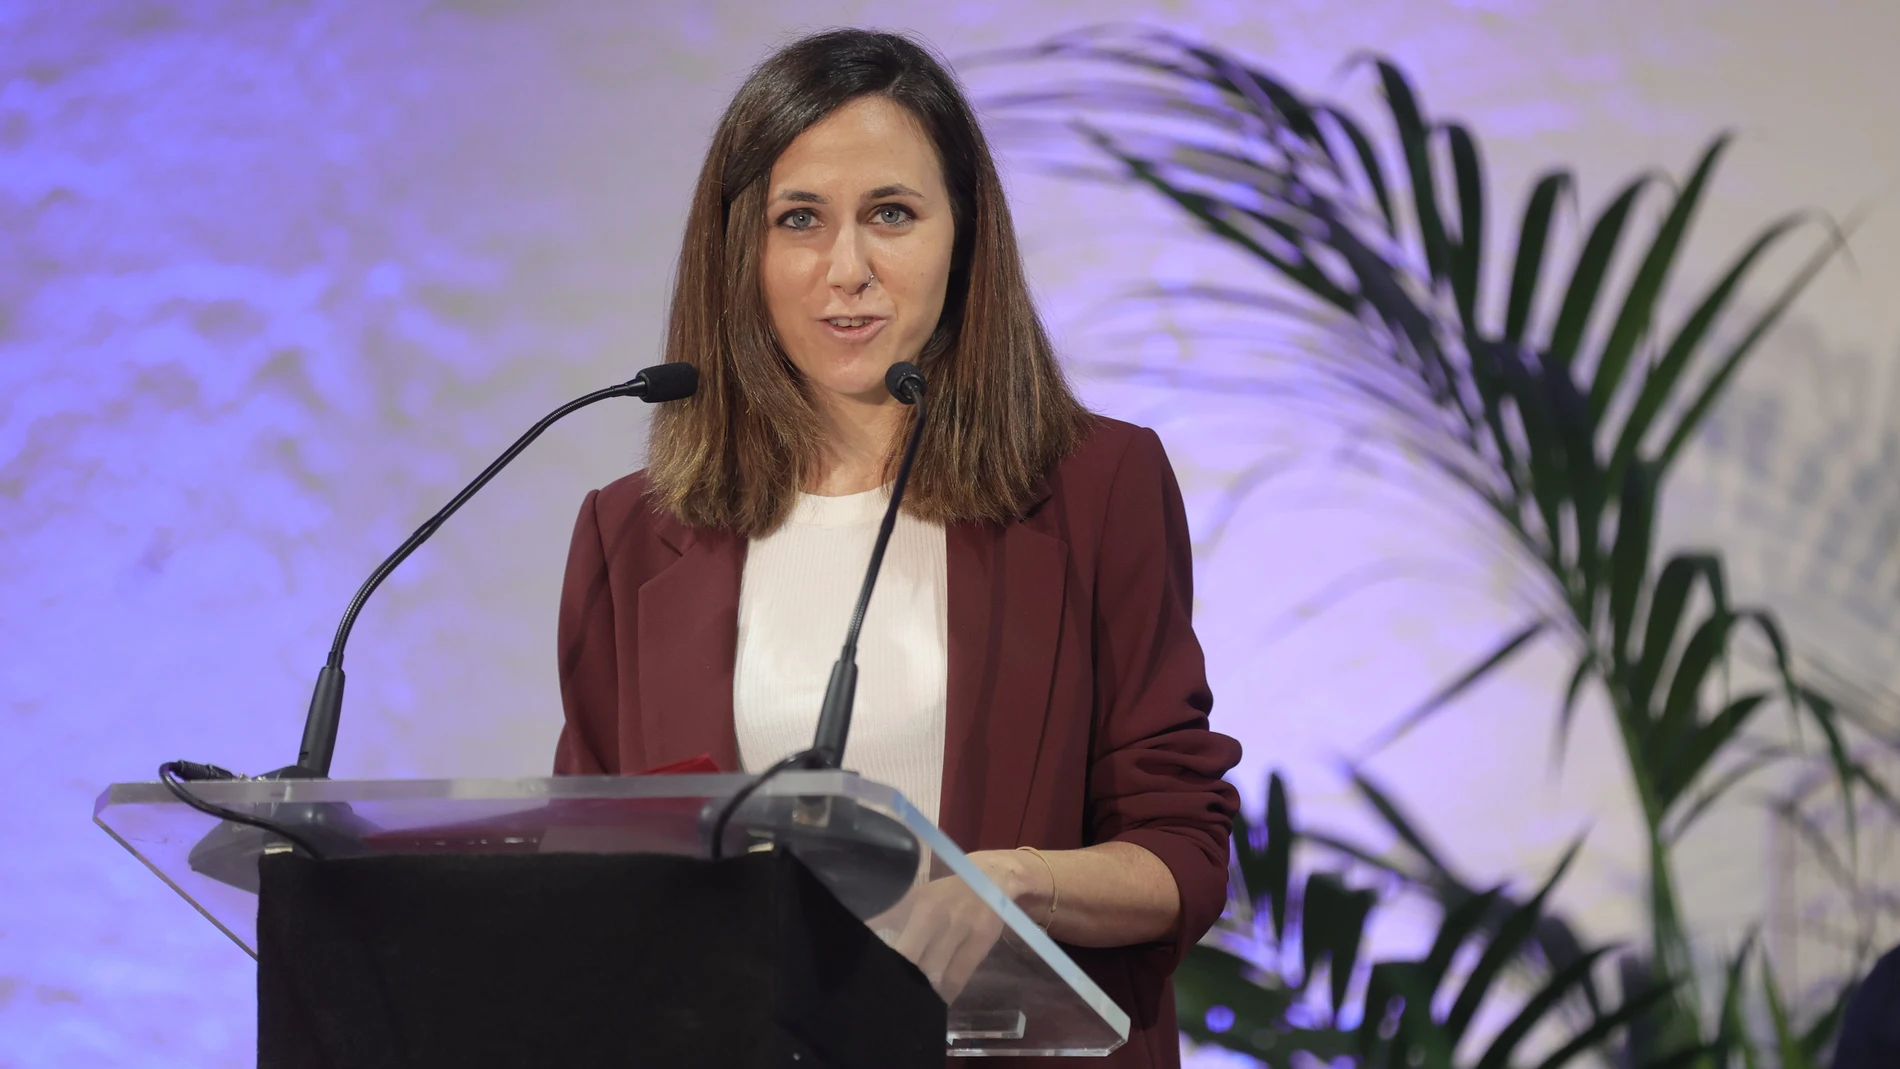 La ministra de Derechos Sociales y Agenda 2030, Ione Belarra, interviene en el Acto Conmemorativo con motivo del Día Internacional para la Erradicación de la Pobreza, en el Espacio Rastro Madrid, a 15 de octubre de 2021